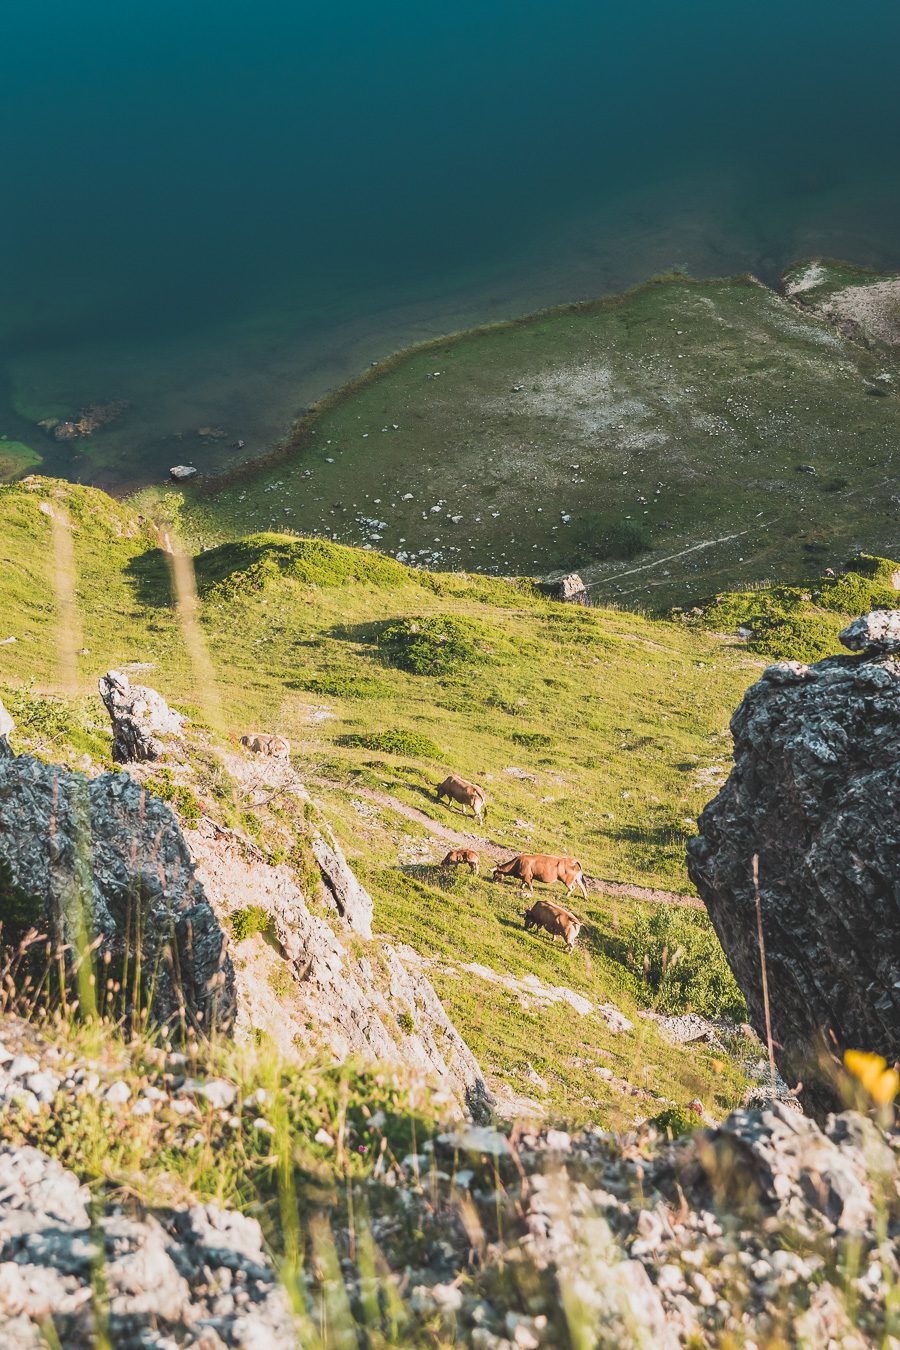 Partez à la découverte d'un paradis naturel : le Parc Naturel de Somiedo dans les Asturies. Plongez dans des paysages époustouflants, entre montagnes majestueuses et vallées verdoyantes. Une aventure inoubliable vous attend. Explorez ce joyau naturel lors d'un road trip en van à travers les Asturies dans le Nord de l'Espagne et faites de belles randonnées. 